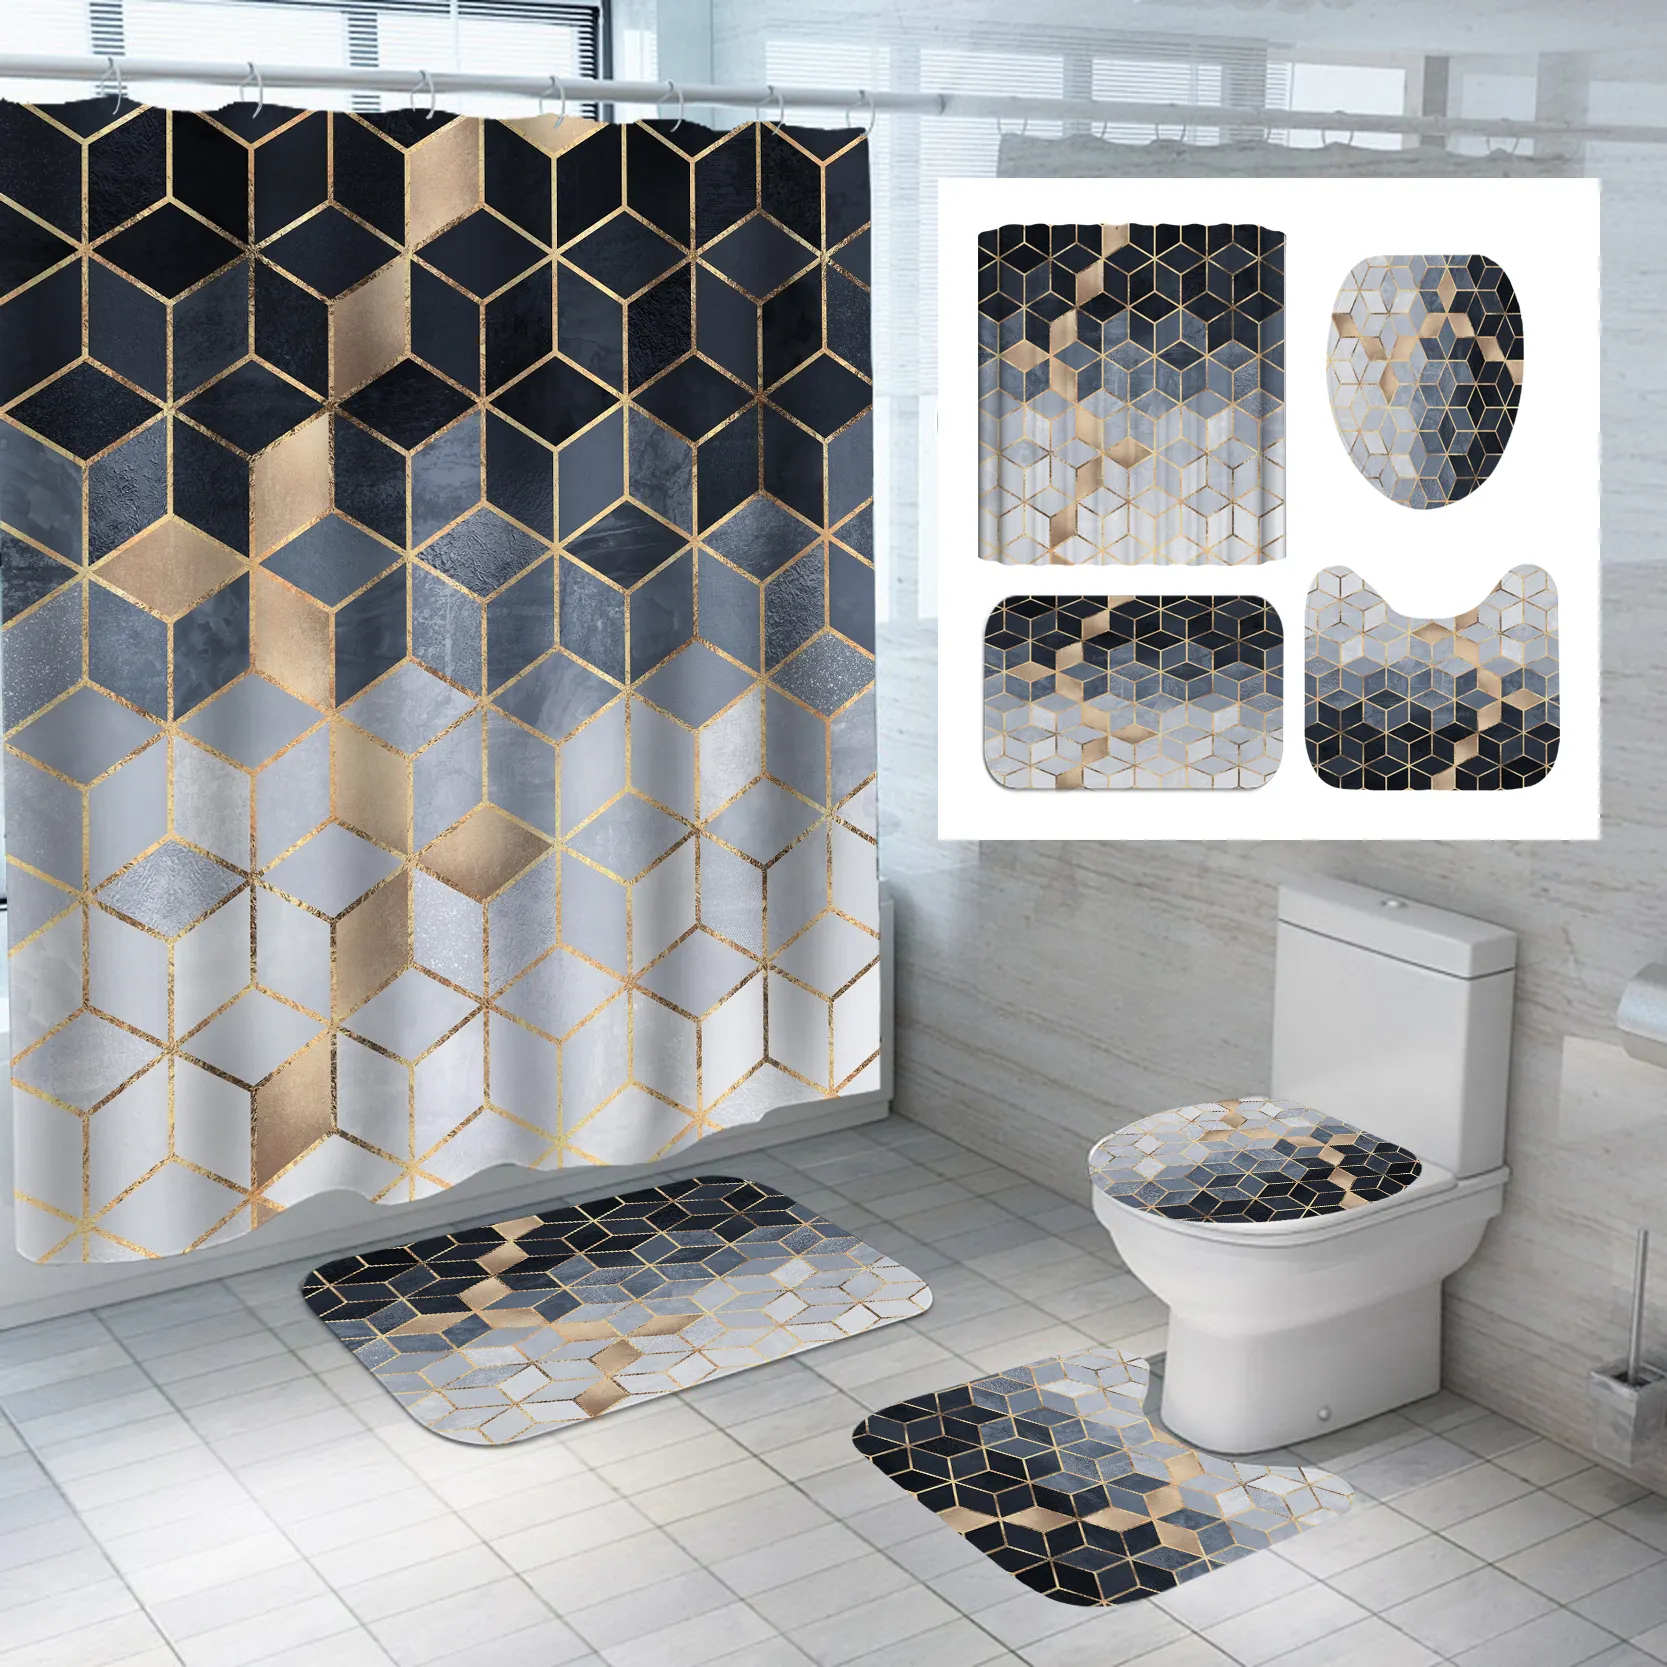 2021 дома готовые пользовательский дизайн ткани персонализированные геометрический узор с ванна душ занавес 4 предмета в комплекте